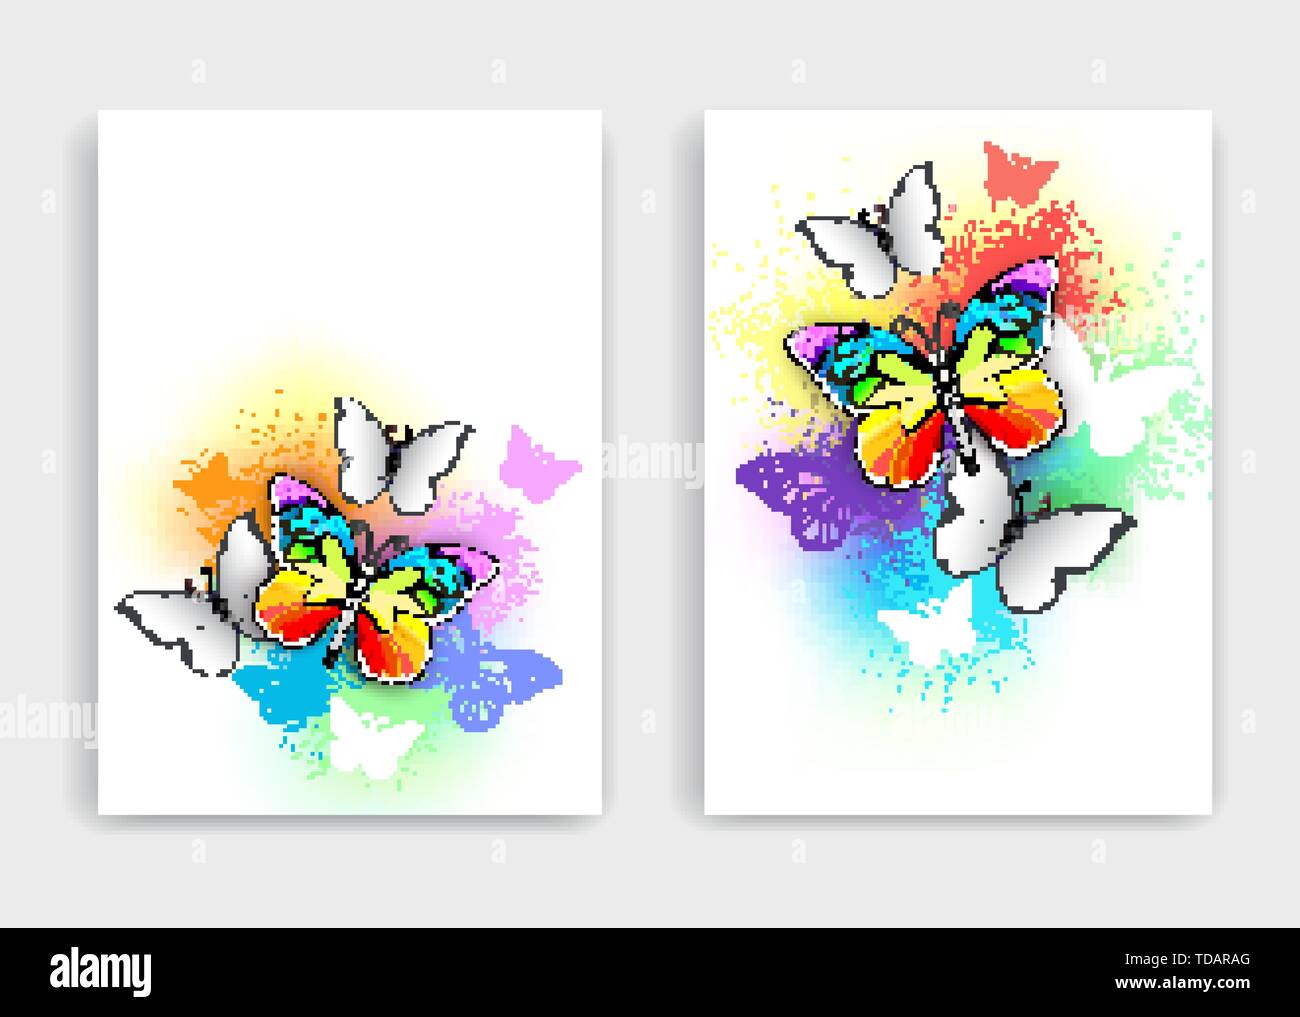 Design für die Broschüre von realistischen Regenbogen und weiße Schmetterlinge auf Licht changierenden Hintergrund, spritzt mit farbigen Tropfen Farbe. Stock Vektor